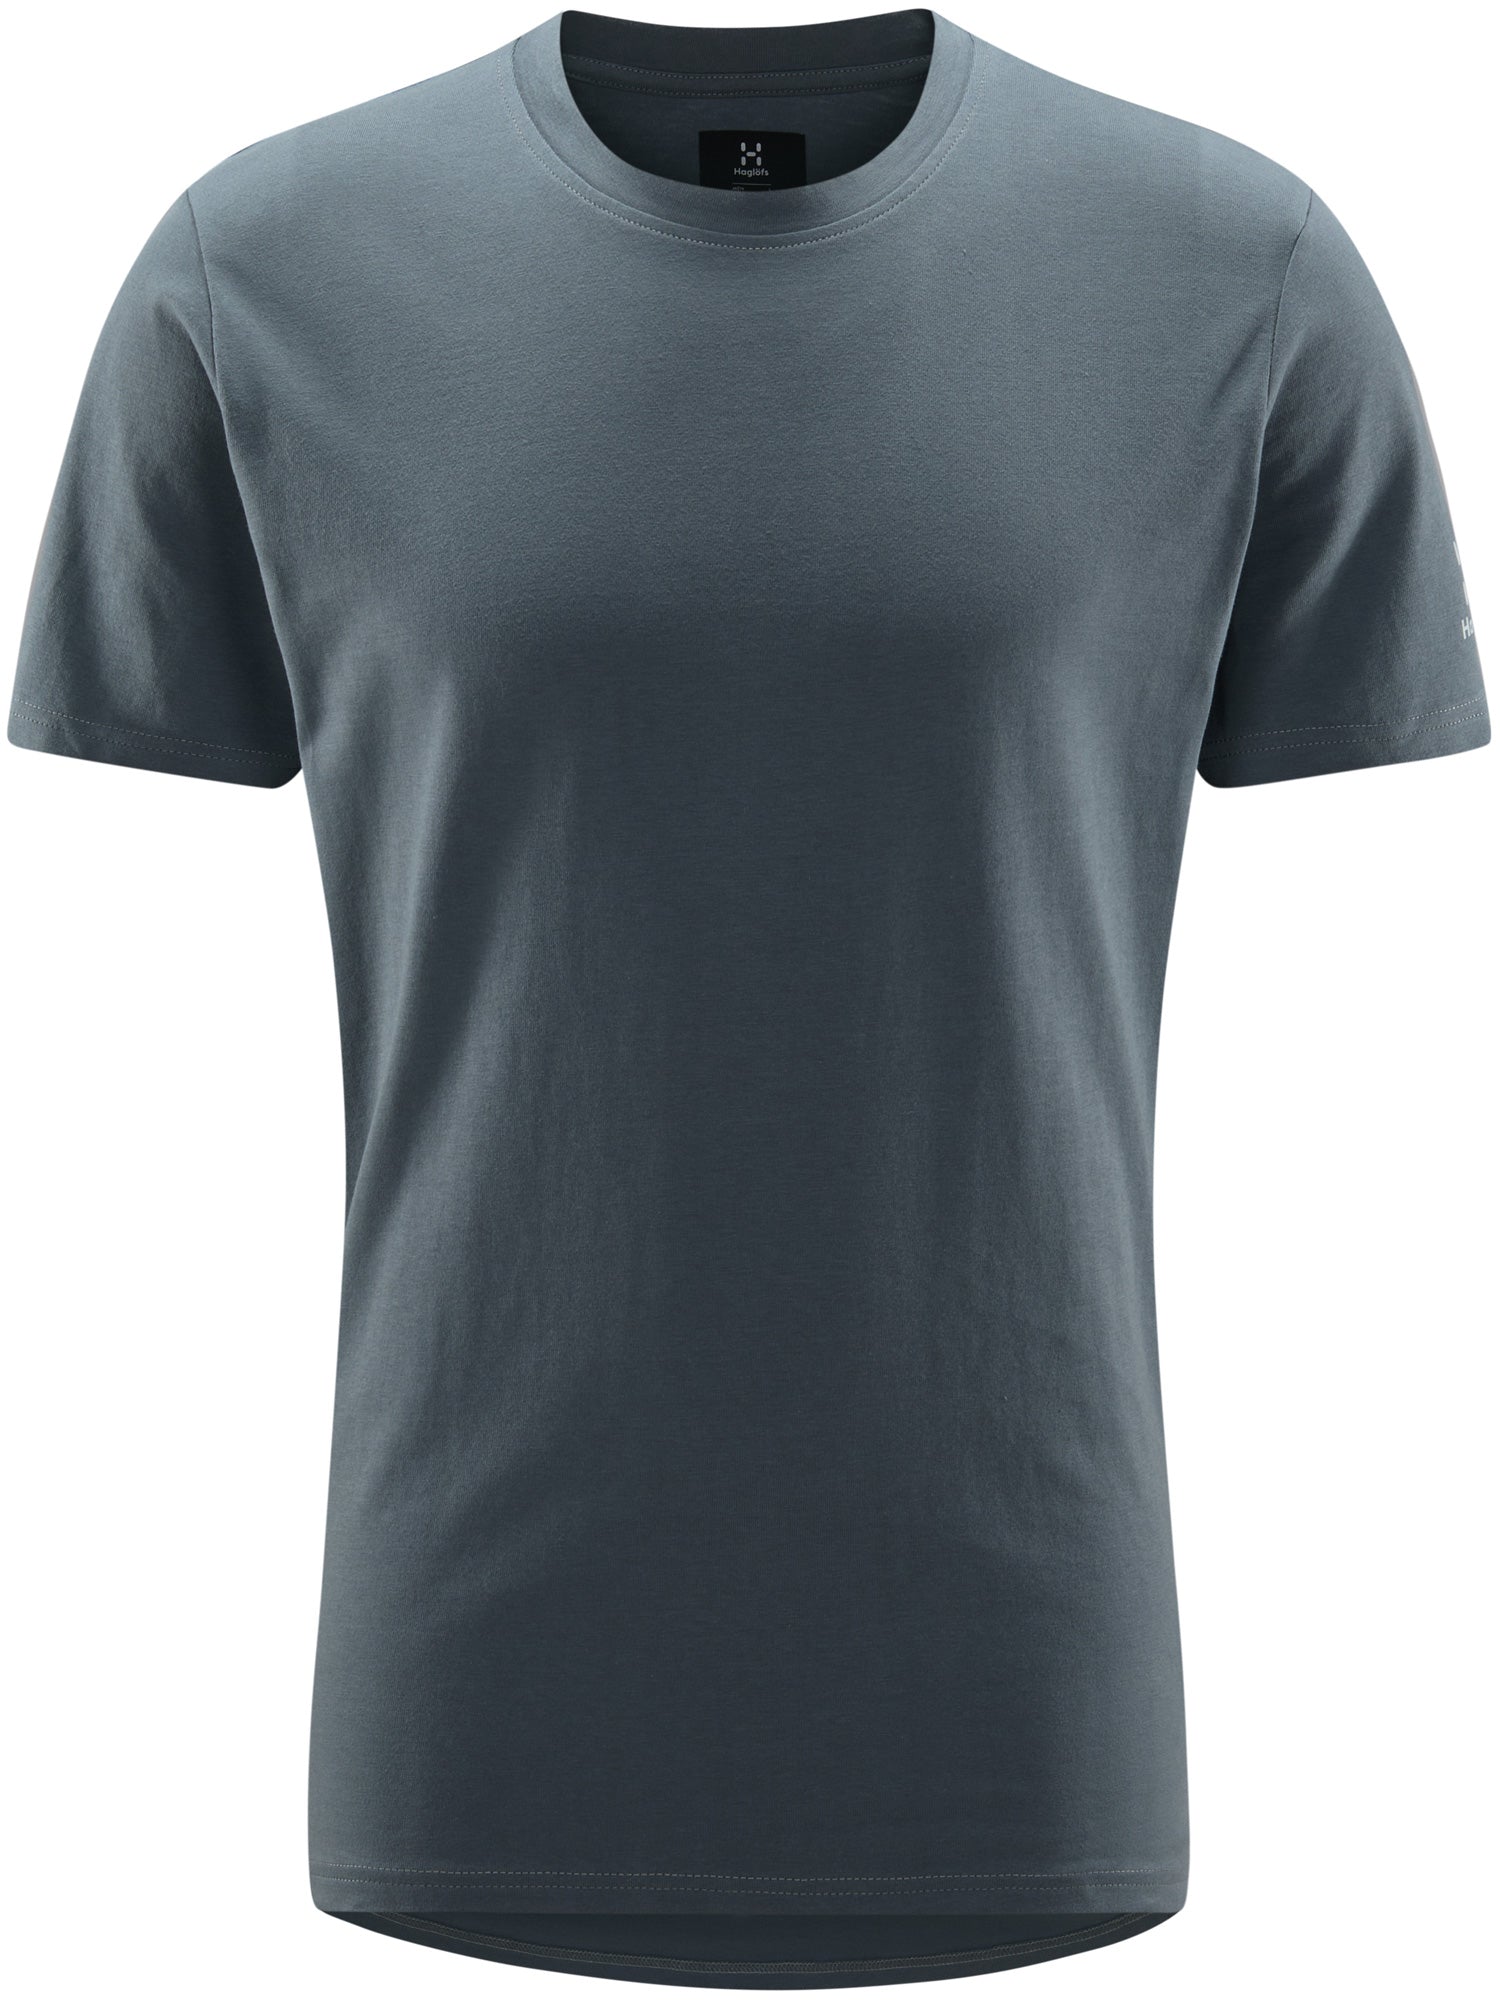 Outsiders L/S Tee L T-Shirts Tシャツ | hartwellspremium.com